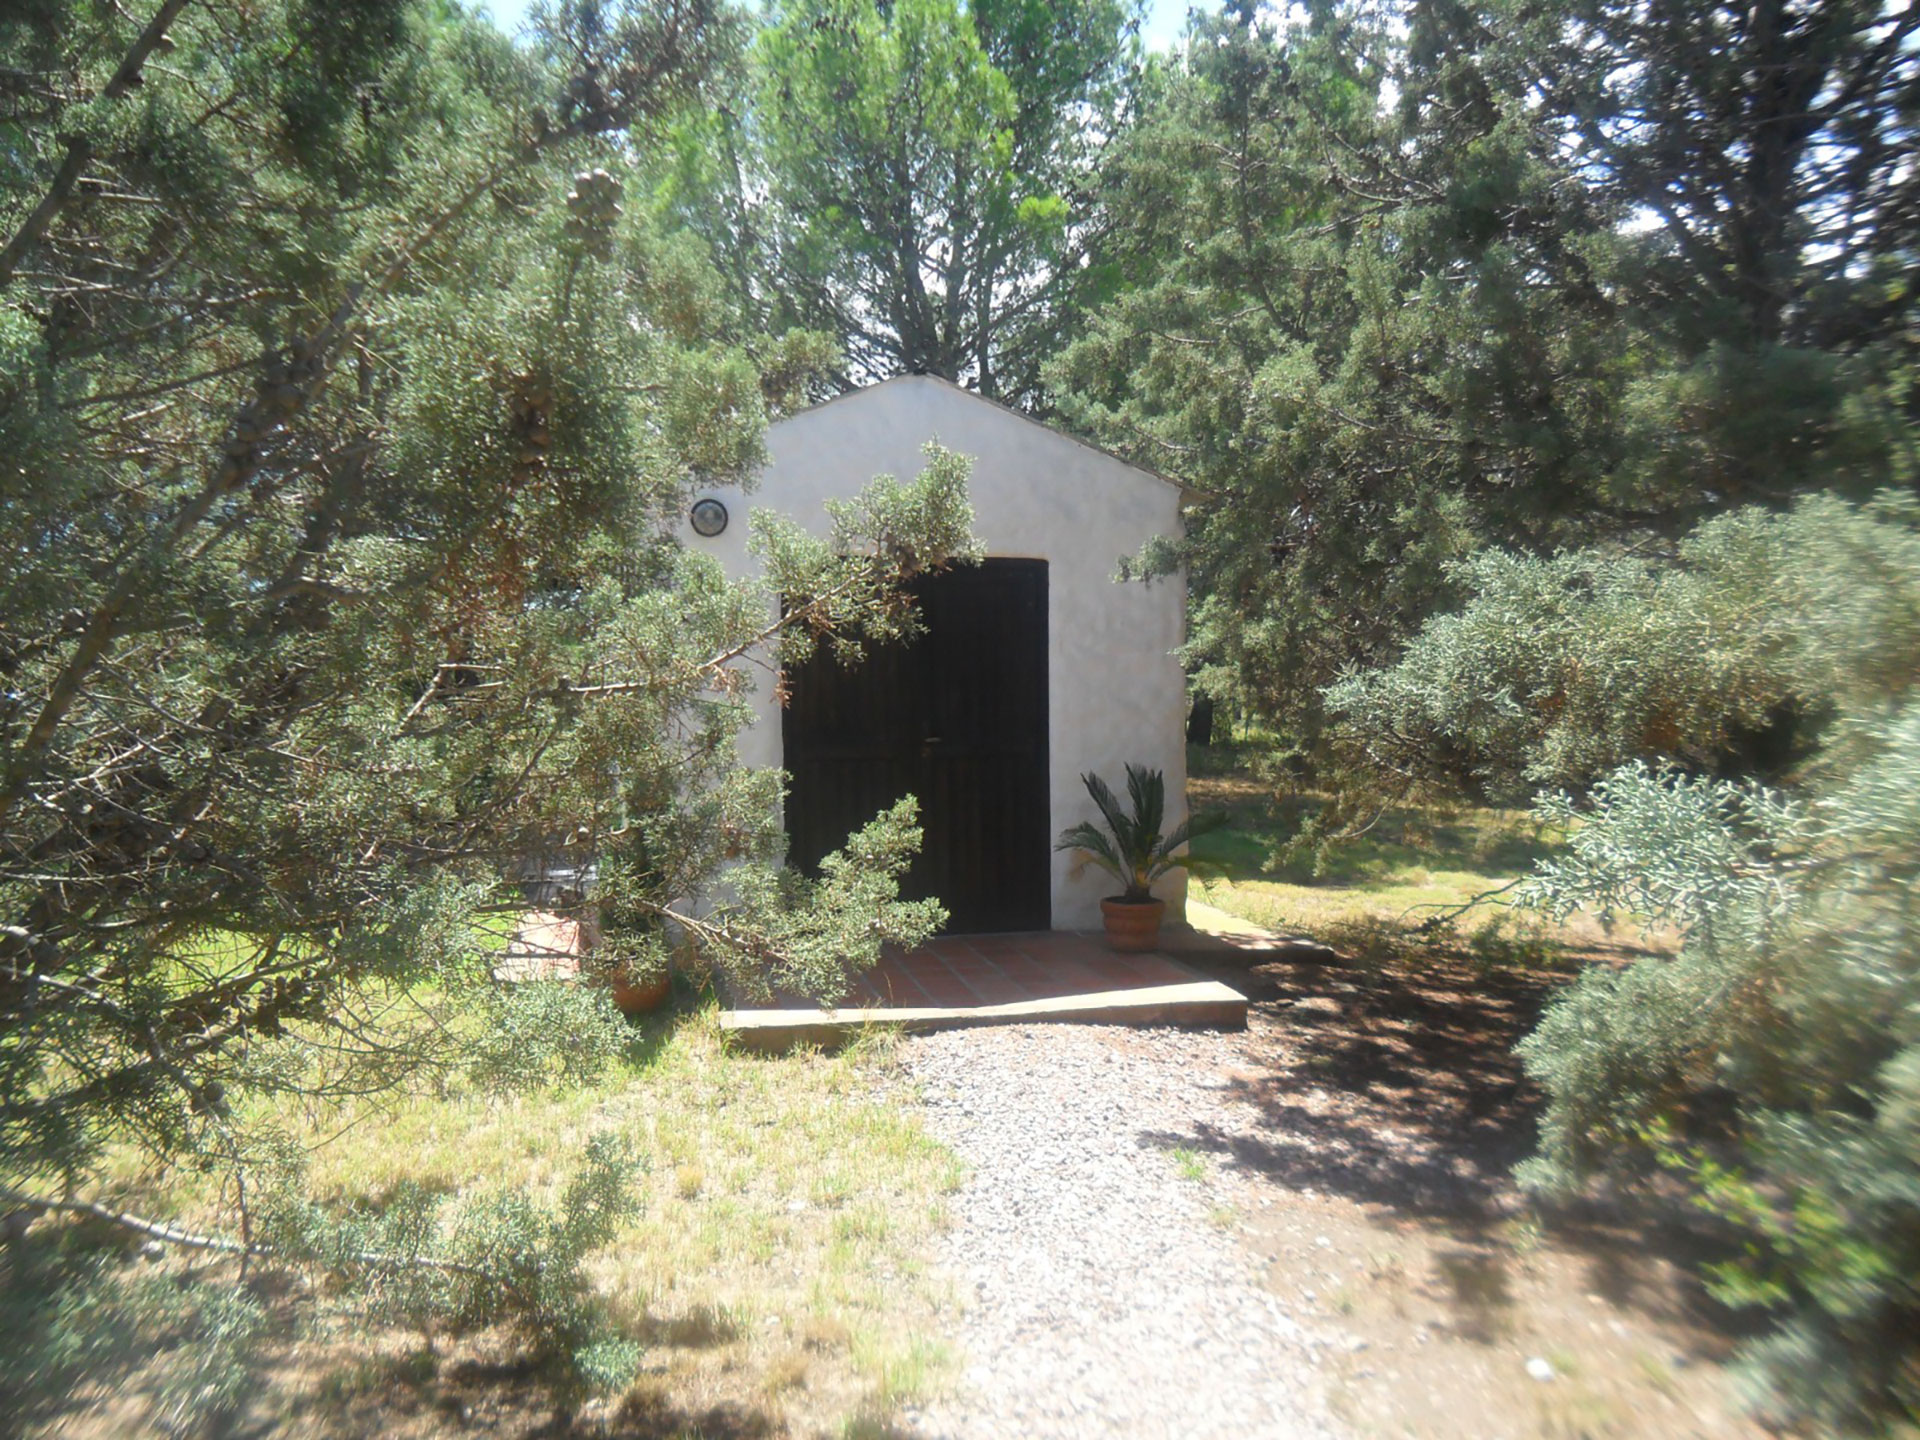 "La ermita", una habitación alejada utilizada únicamente por Padilla en el convento de San Martín, La Pampa, donde según la denuncia ocurrieron algunos de los abusos